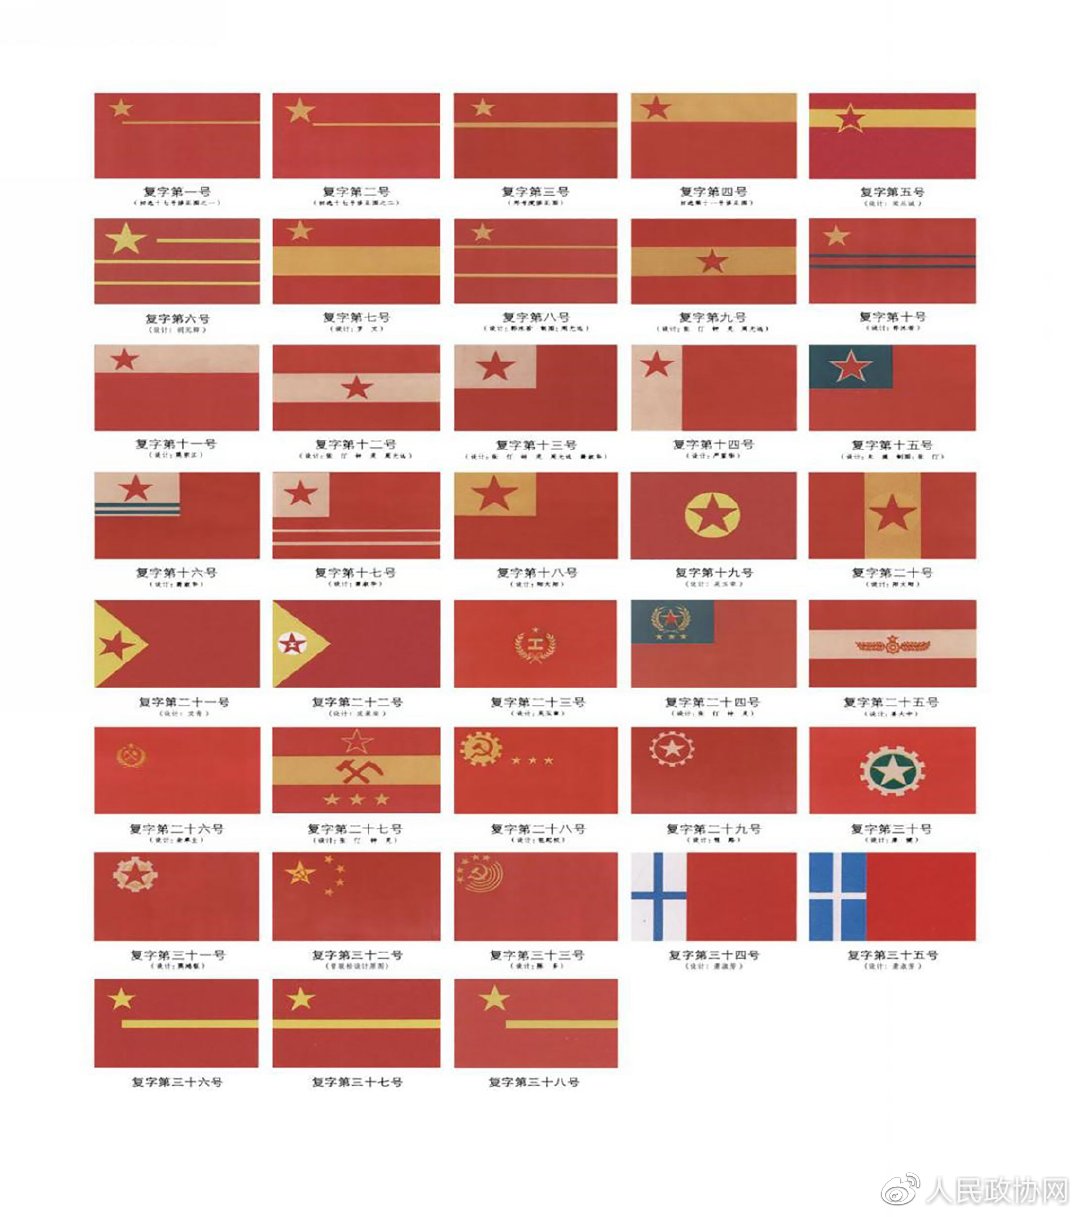 中国国旗高清 版图图片